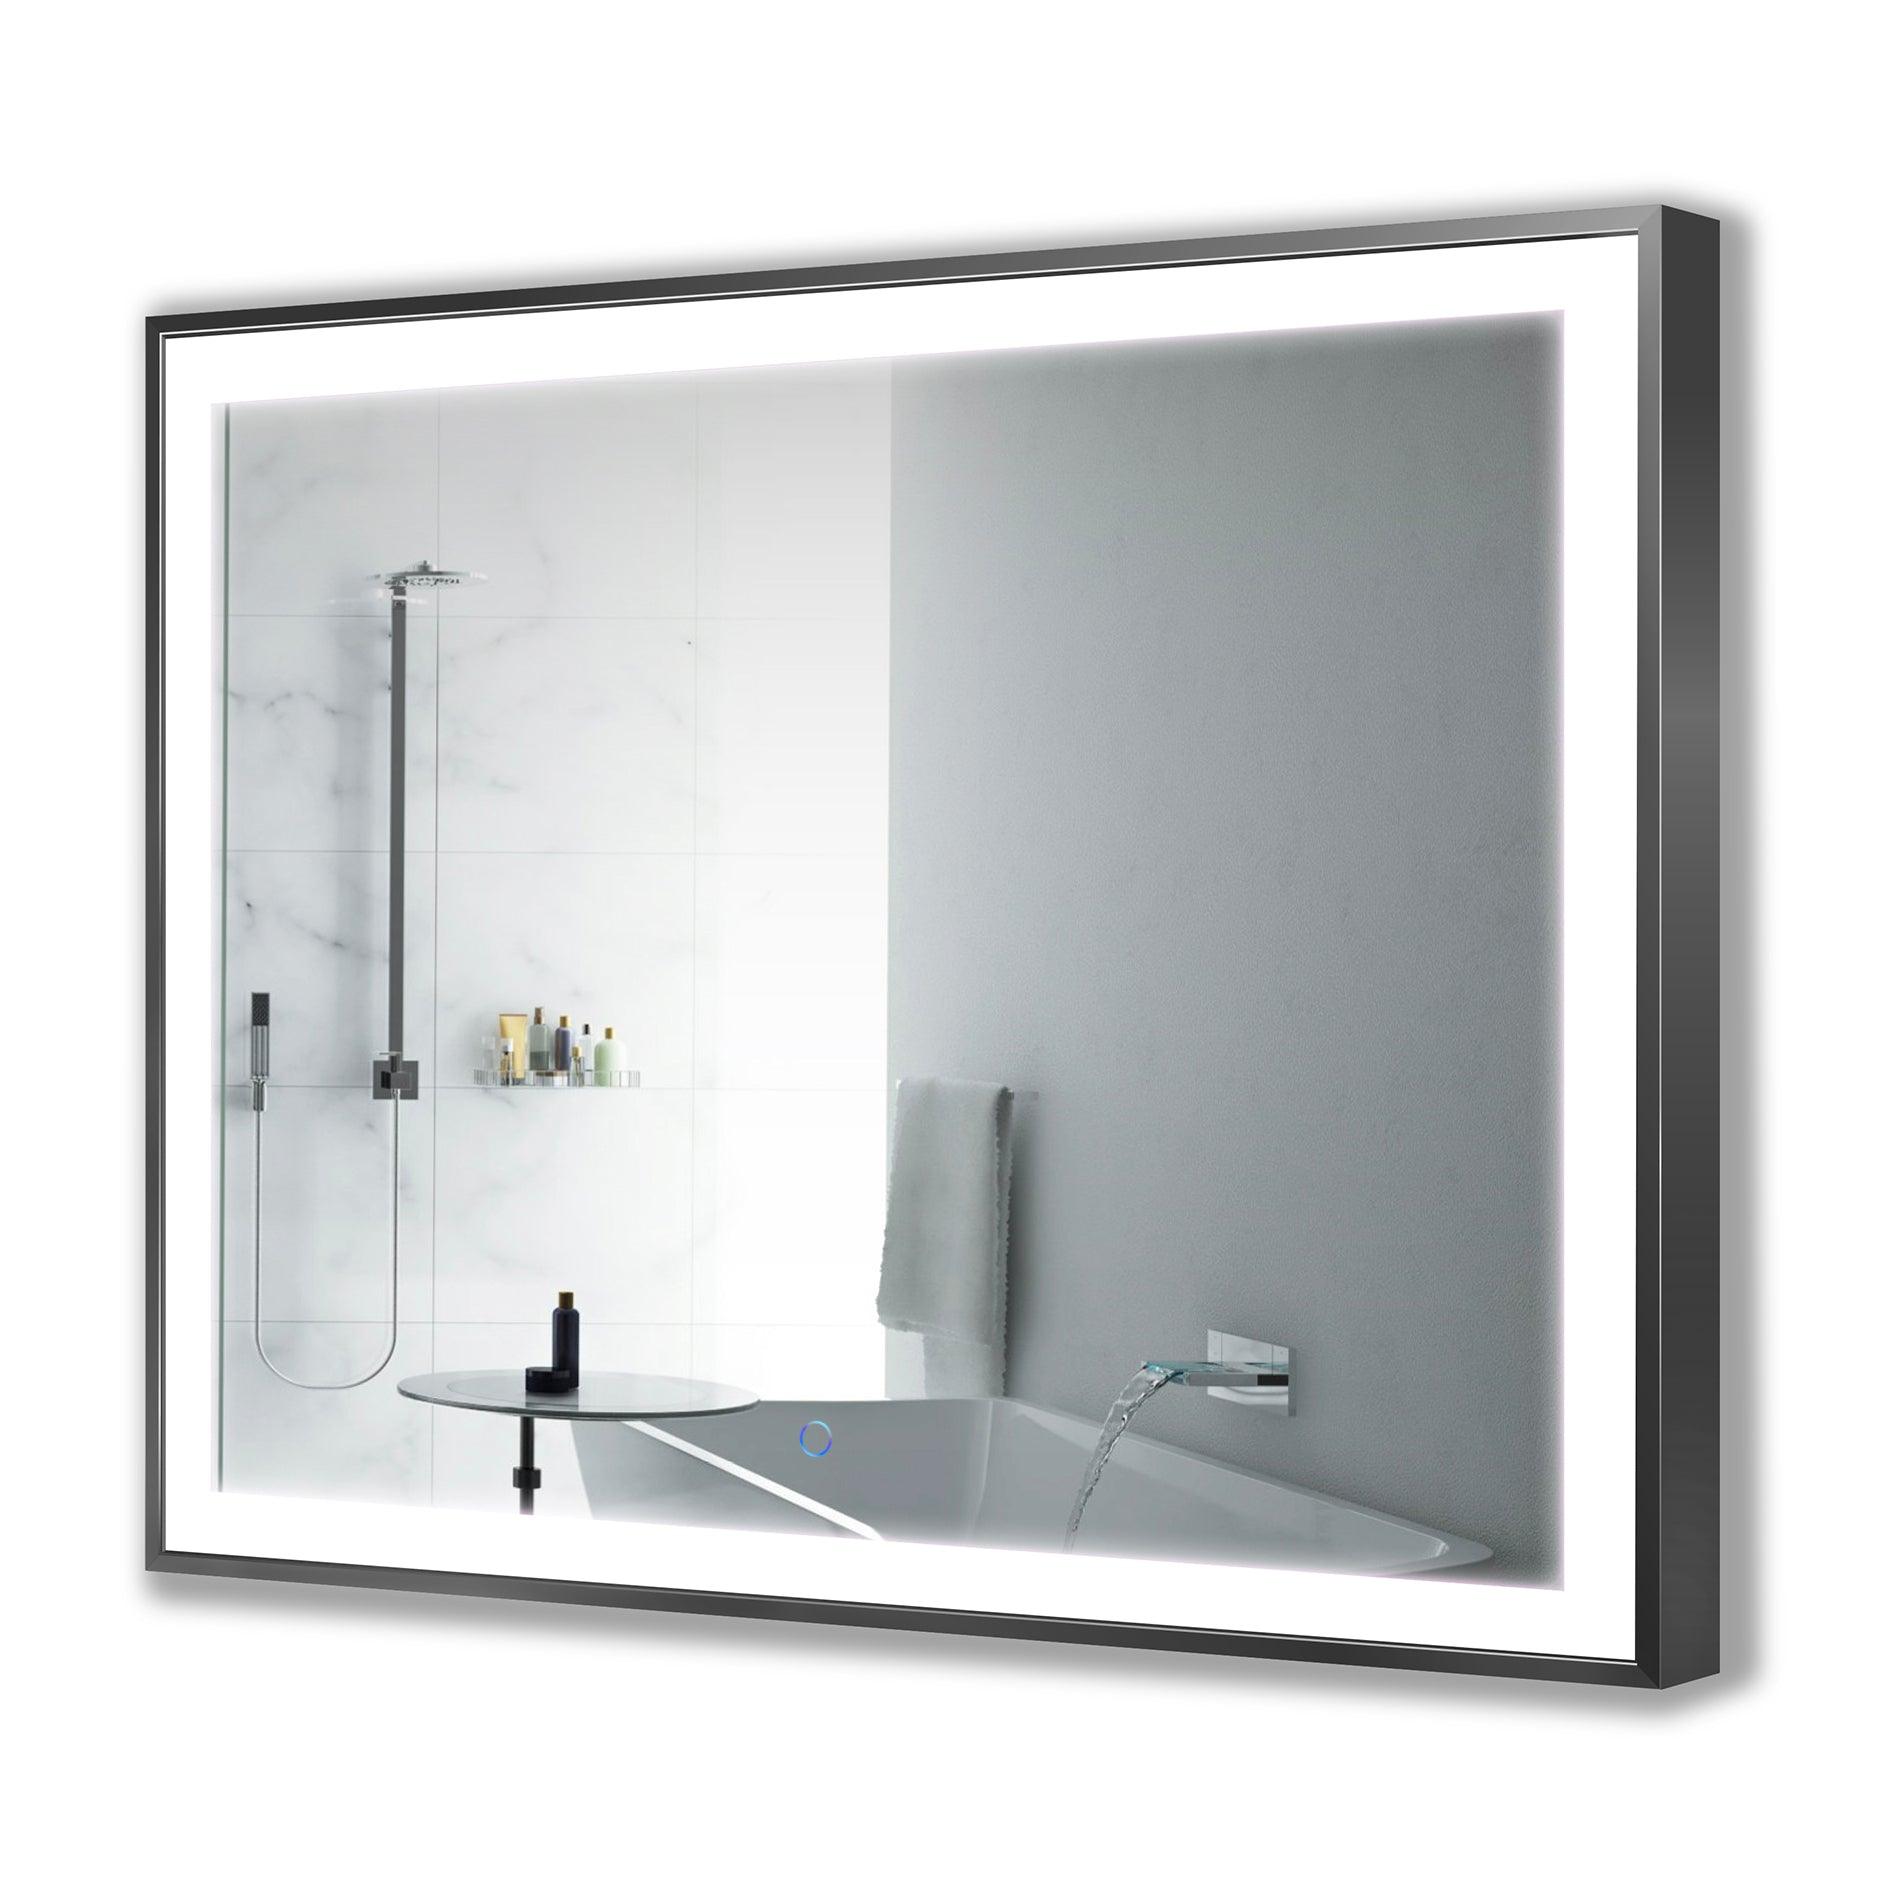 Krugg 48″ X 36″ Soho LED Bathroom Mirror